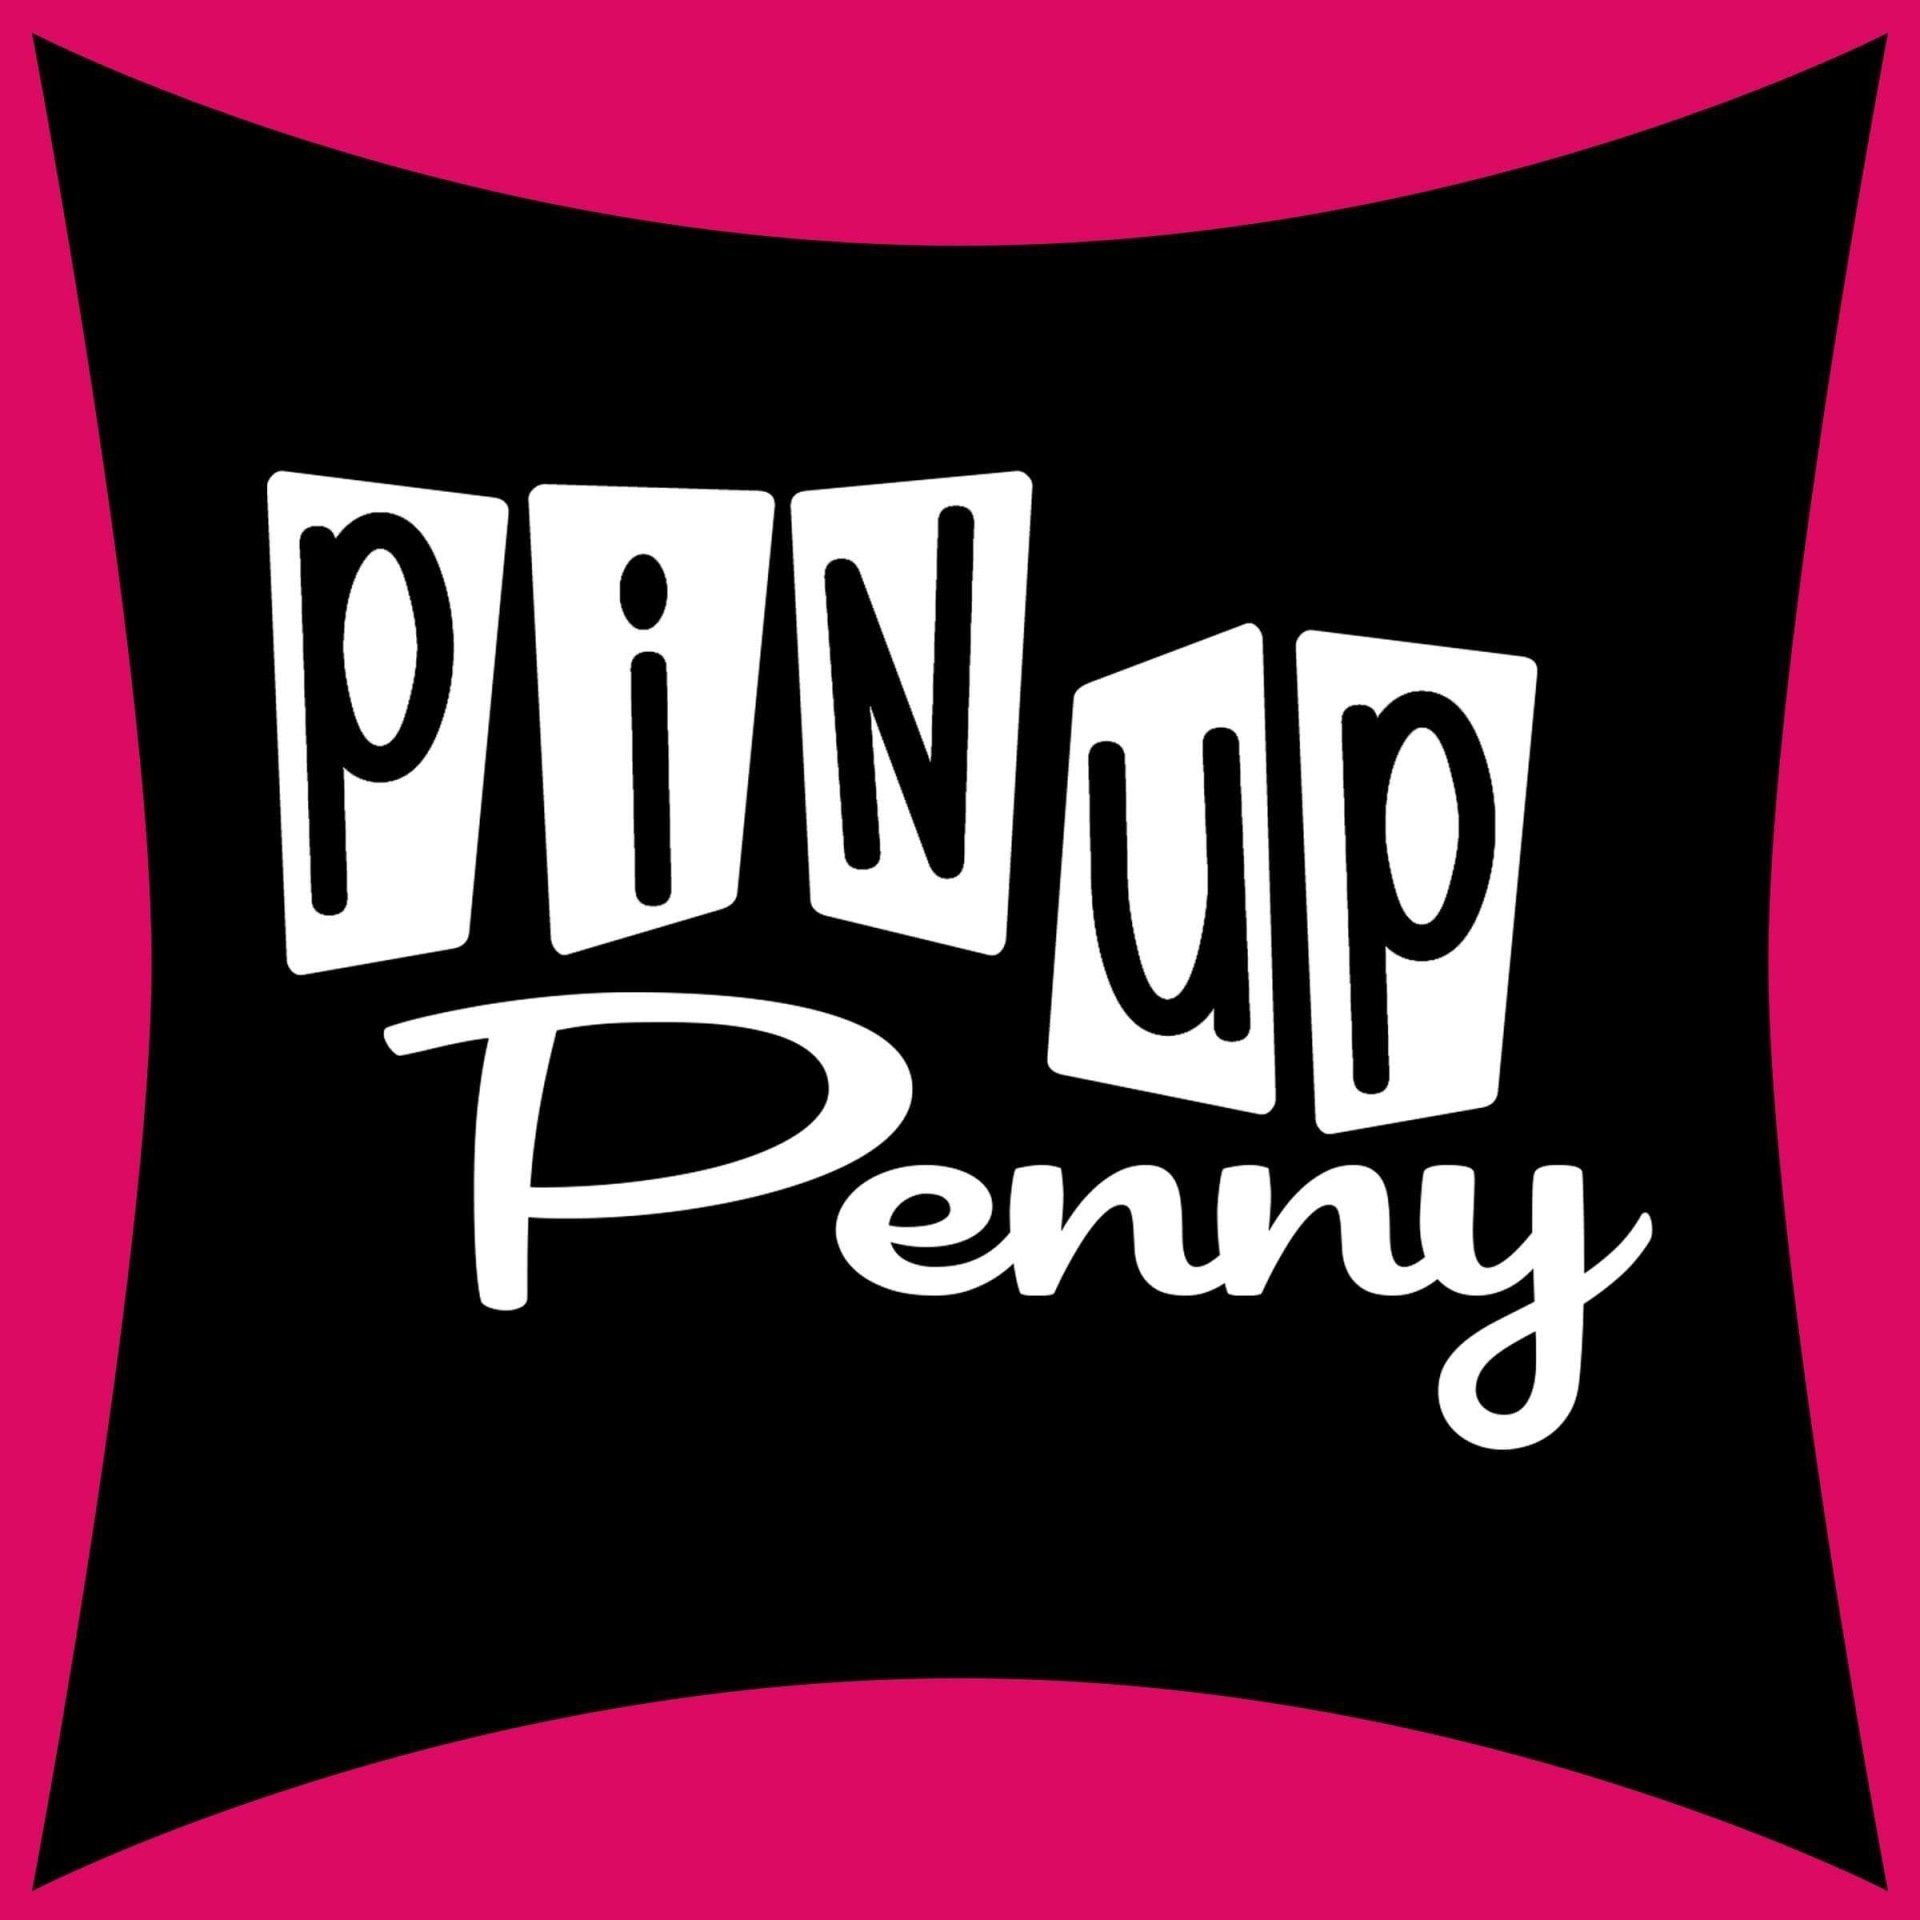 Pin Up Penny logo